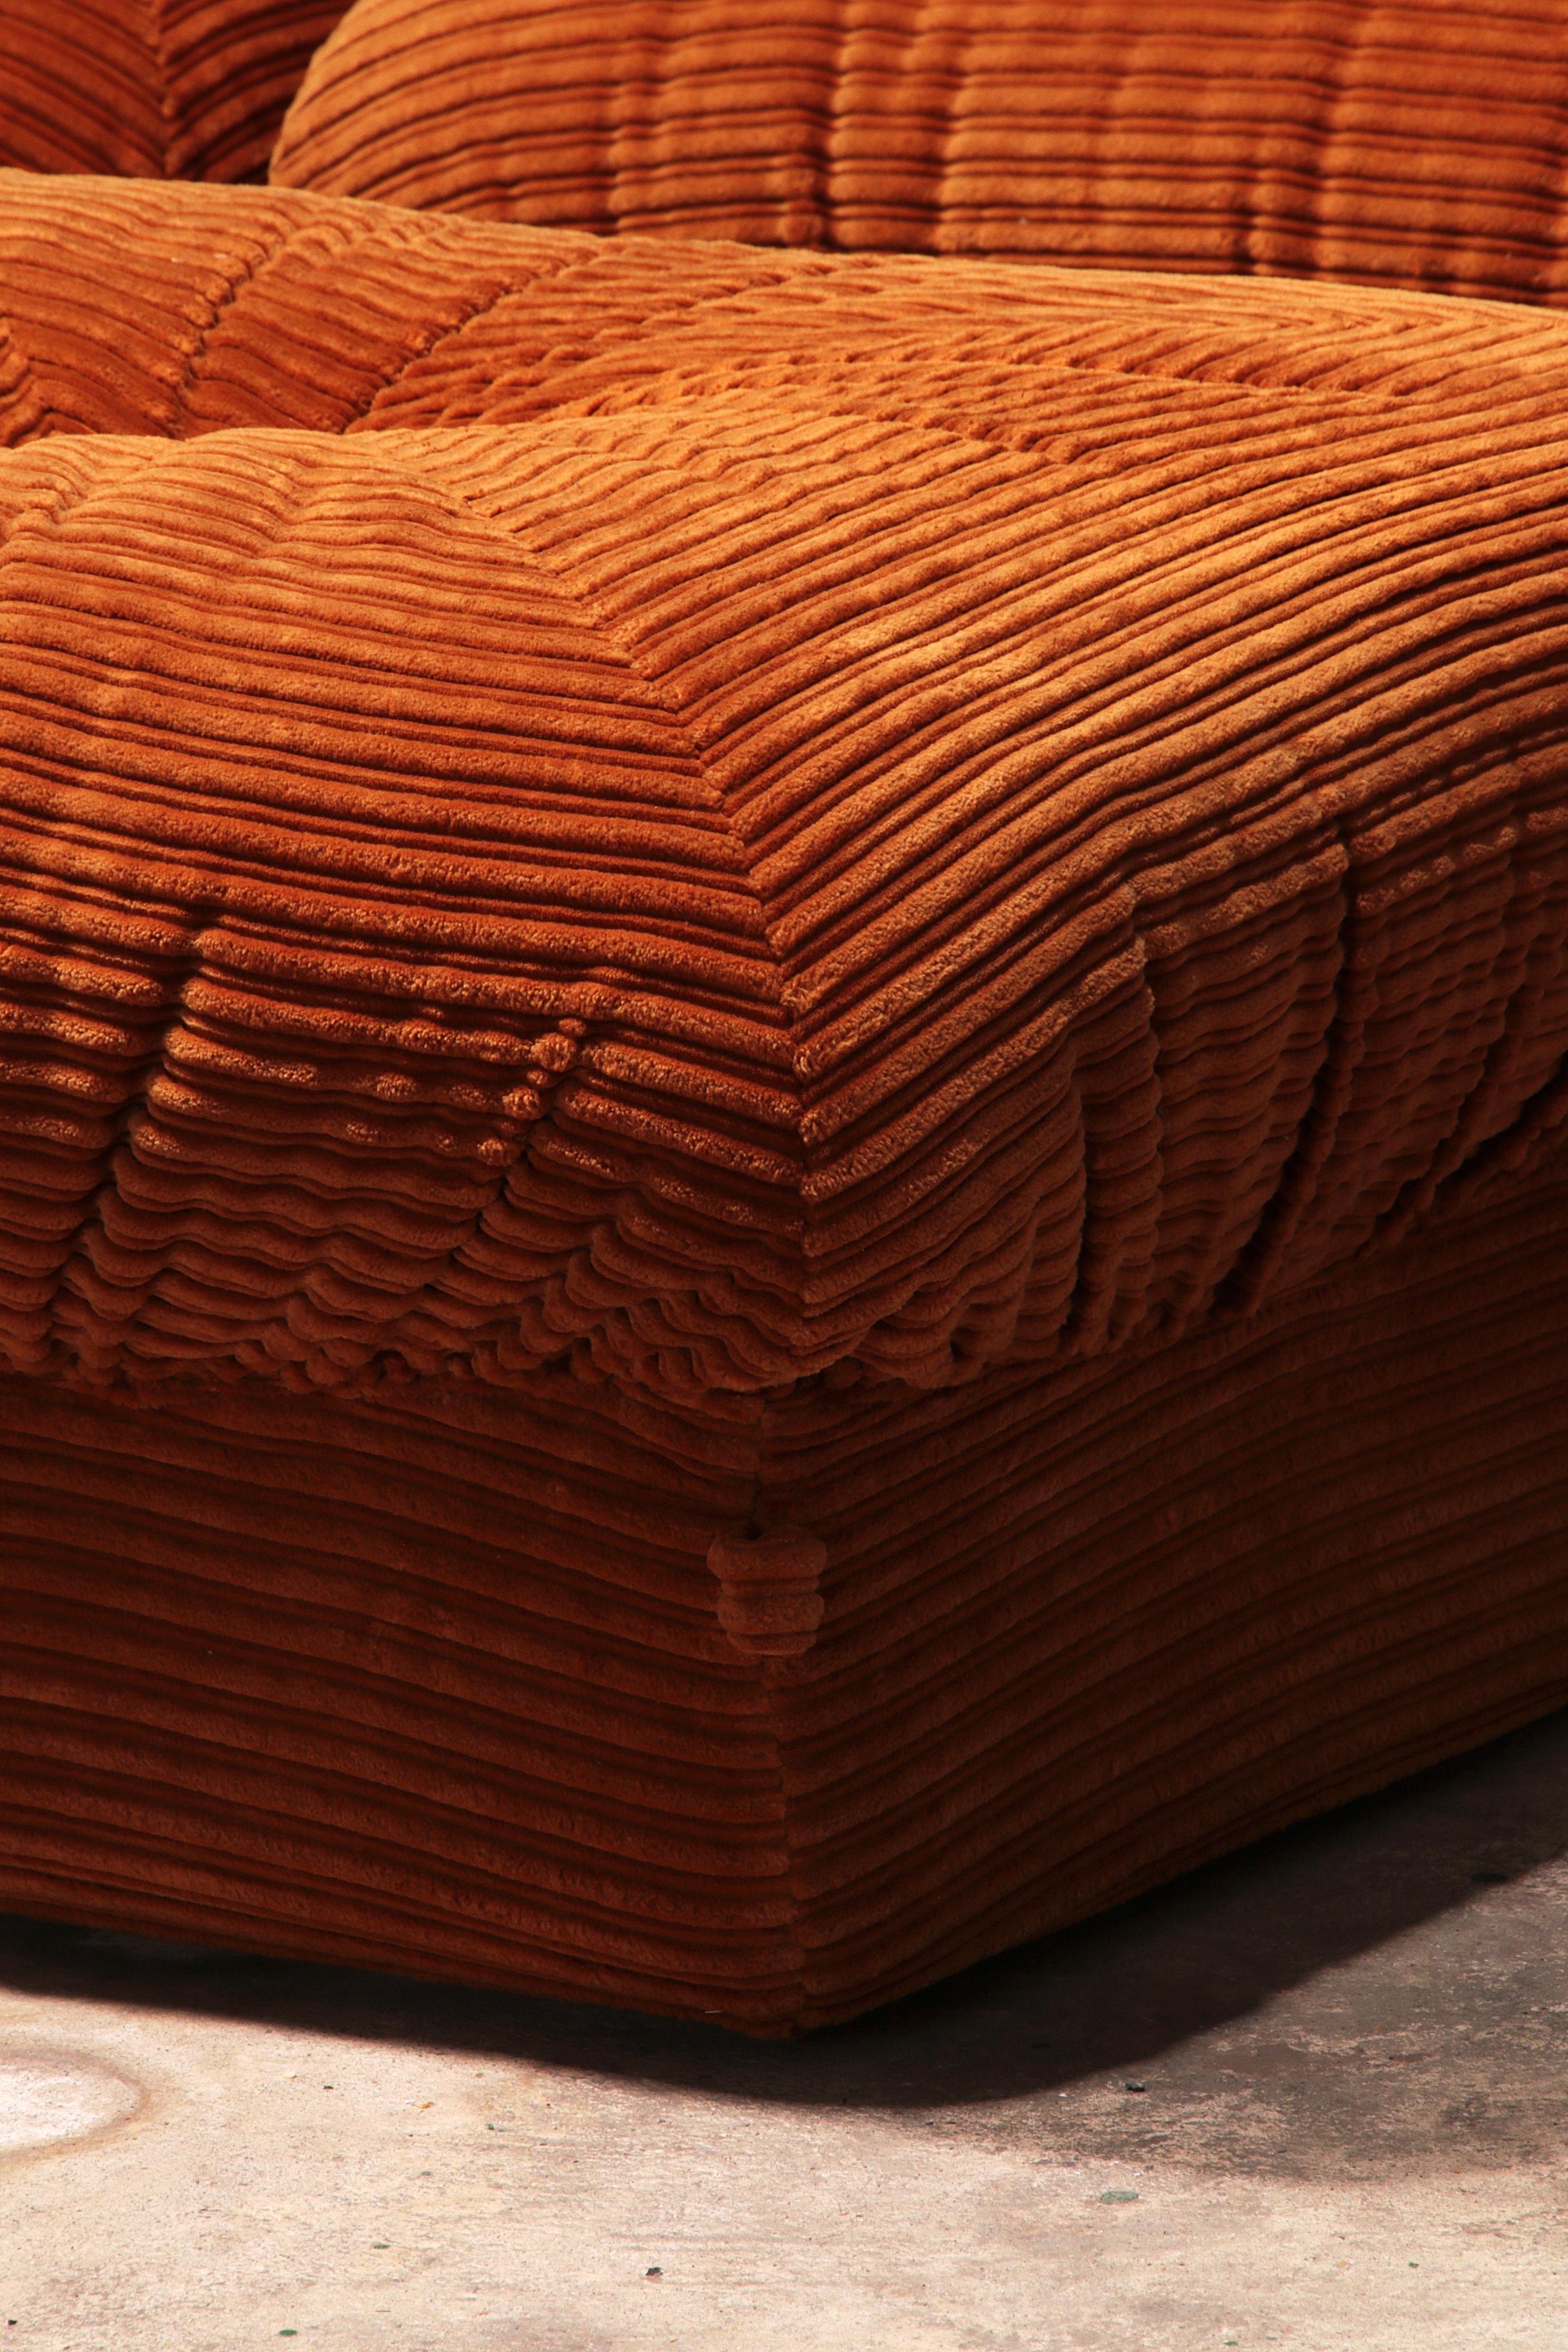 orange corduroy couch